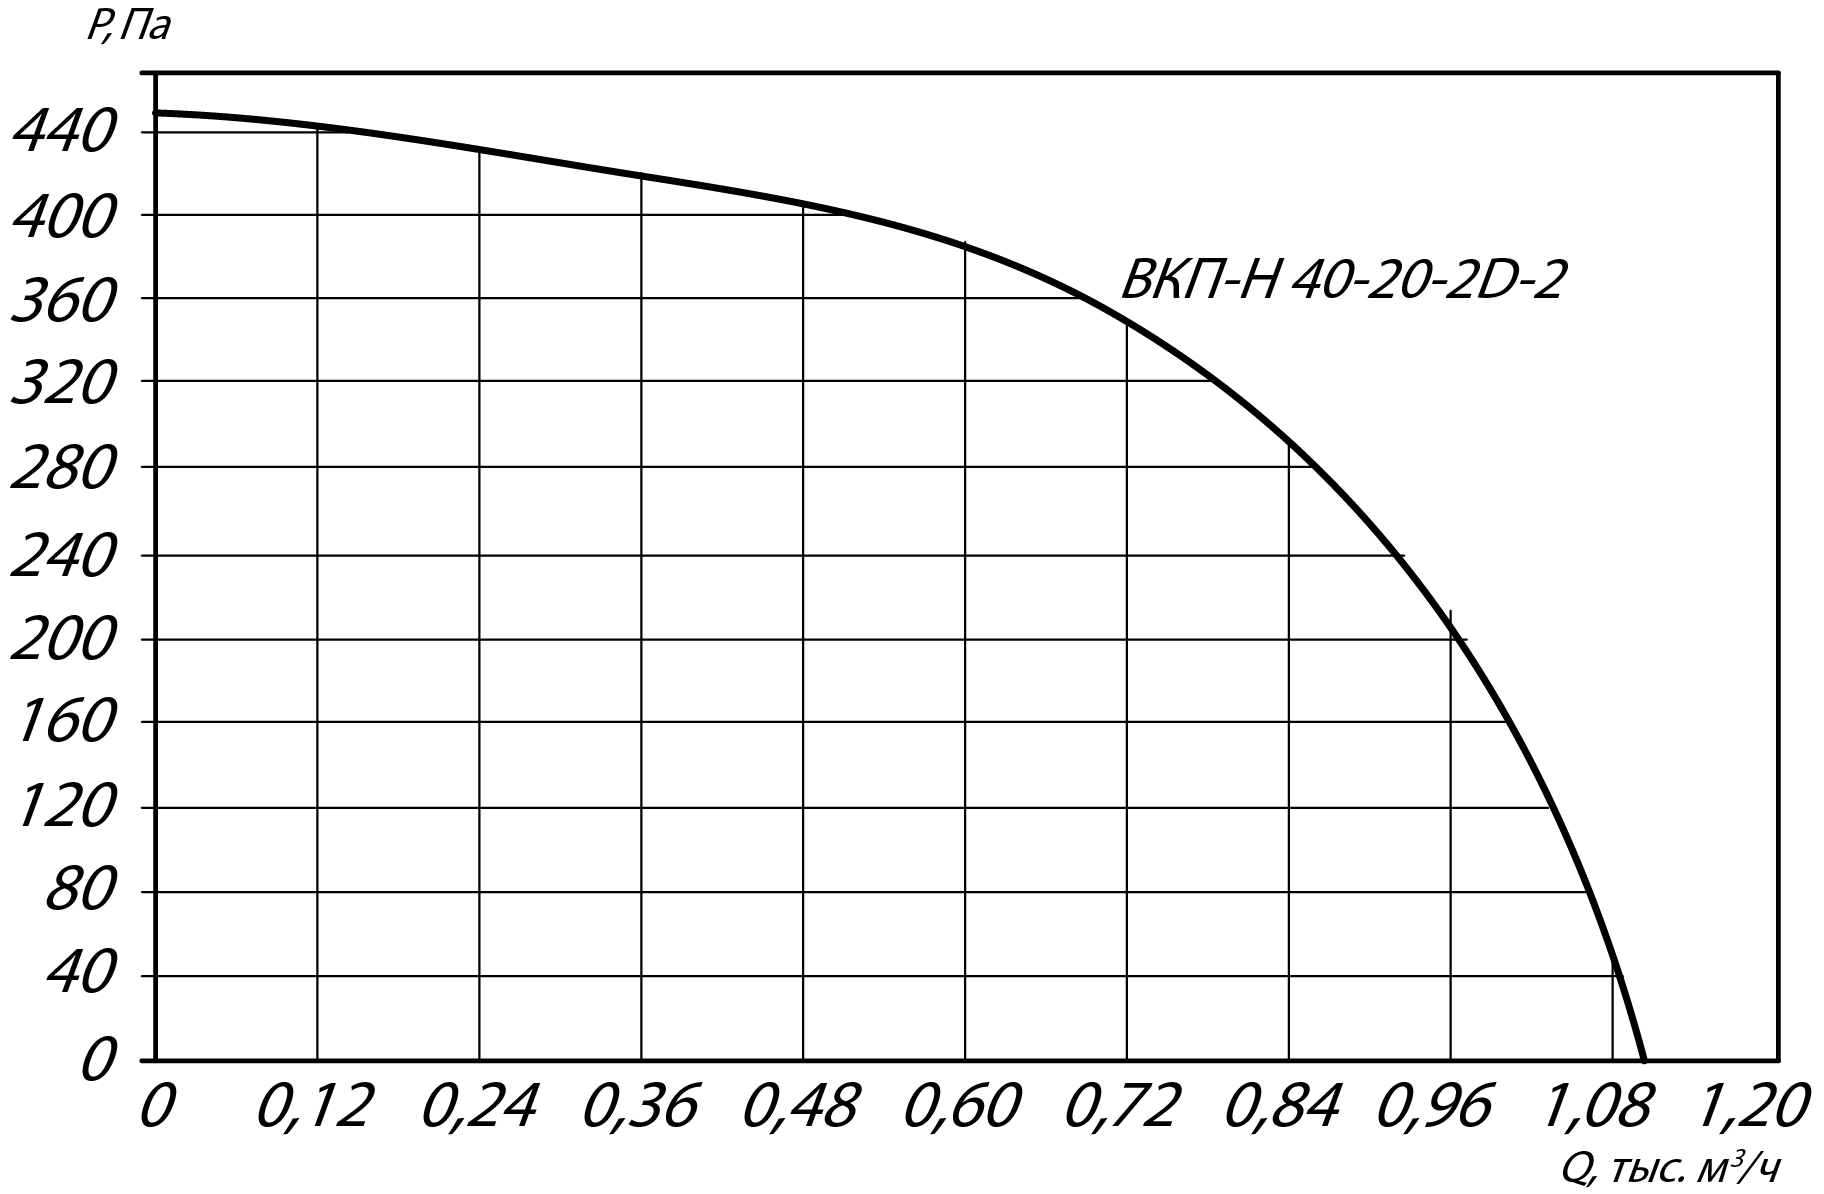 Аэродинамические характеристики канального вентилятора ВКП-Н 40-20